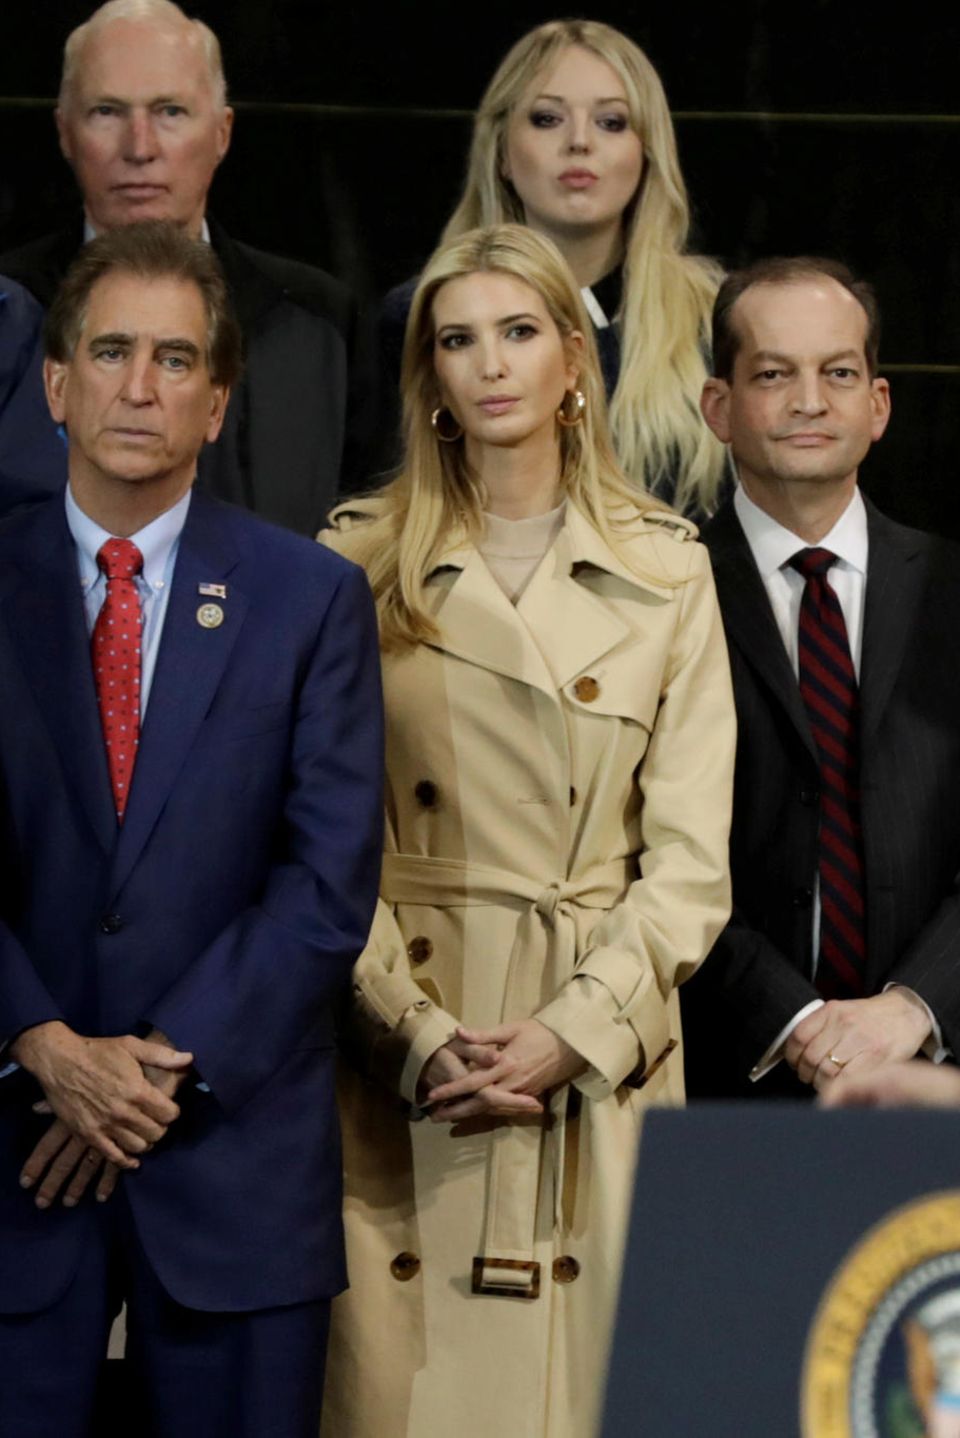 Vor seinen Töchtern Ivanka (vorne) und Tiffany hinten) hält Donald Trump am 29. März 2018 eine Rede in Richfield, Ohio.